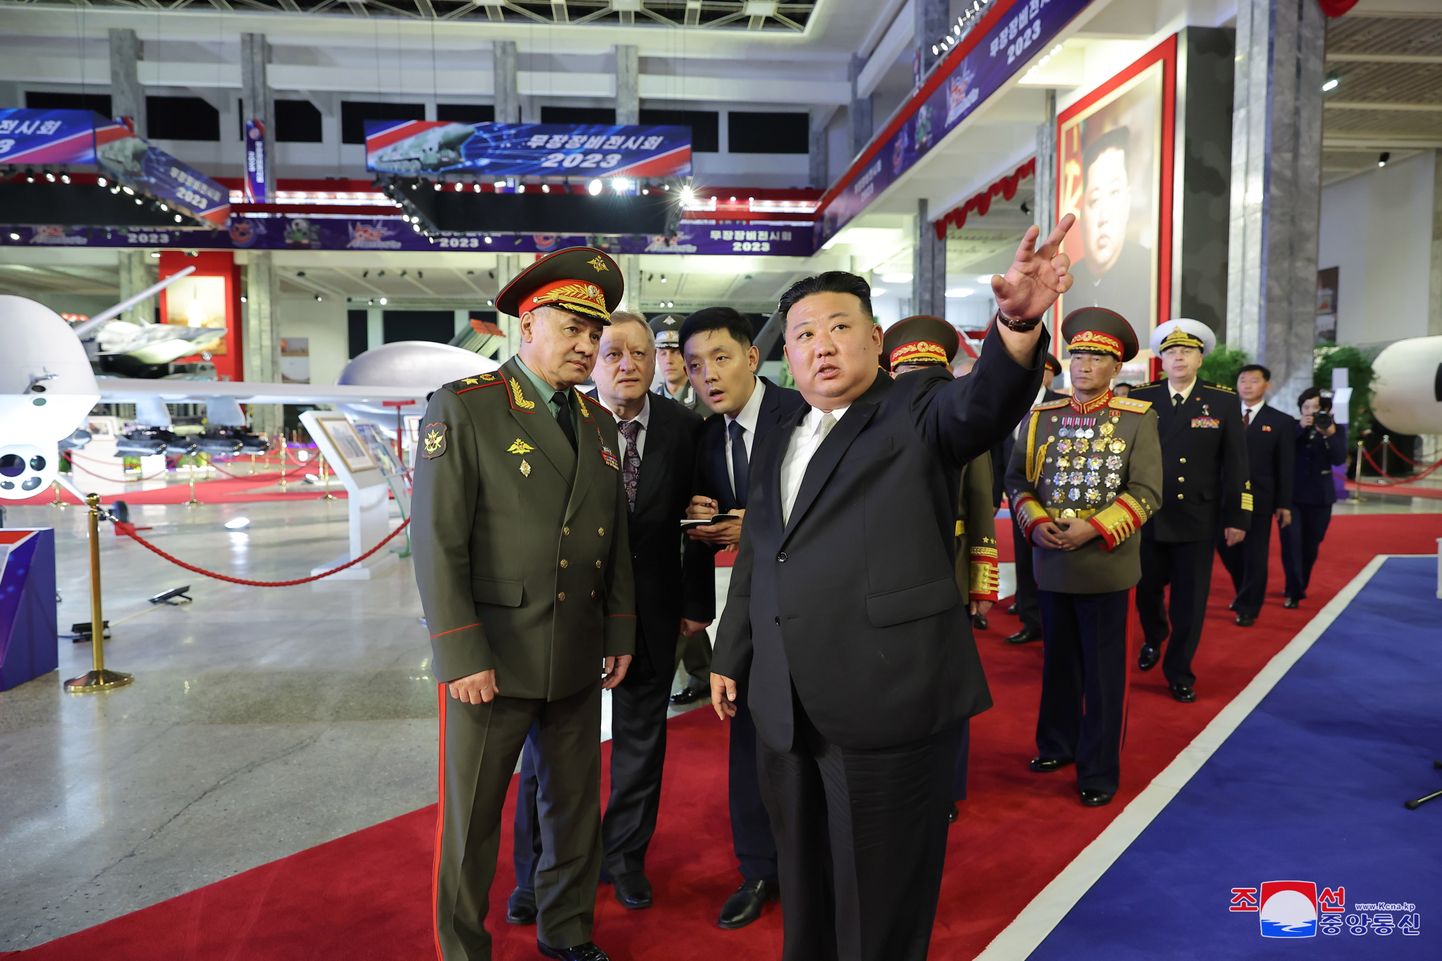 Põhja-Korea liider Kim Jong-un ja Vene kaitseminister Sergei Šoigu relvanäitusel.